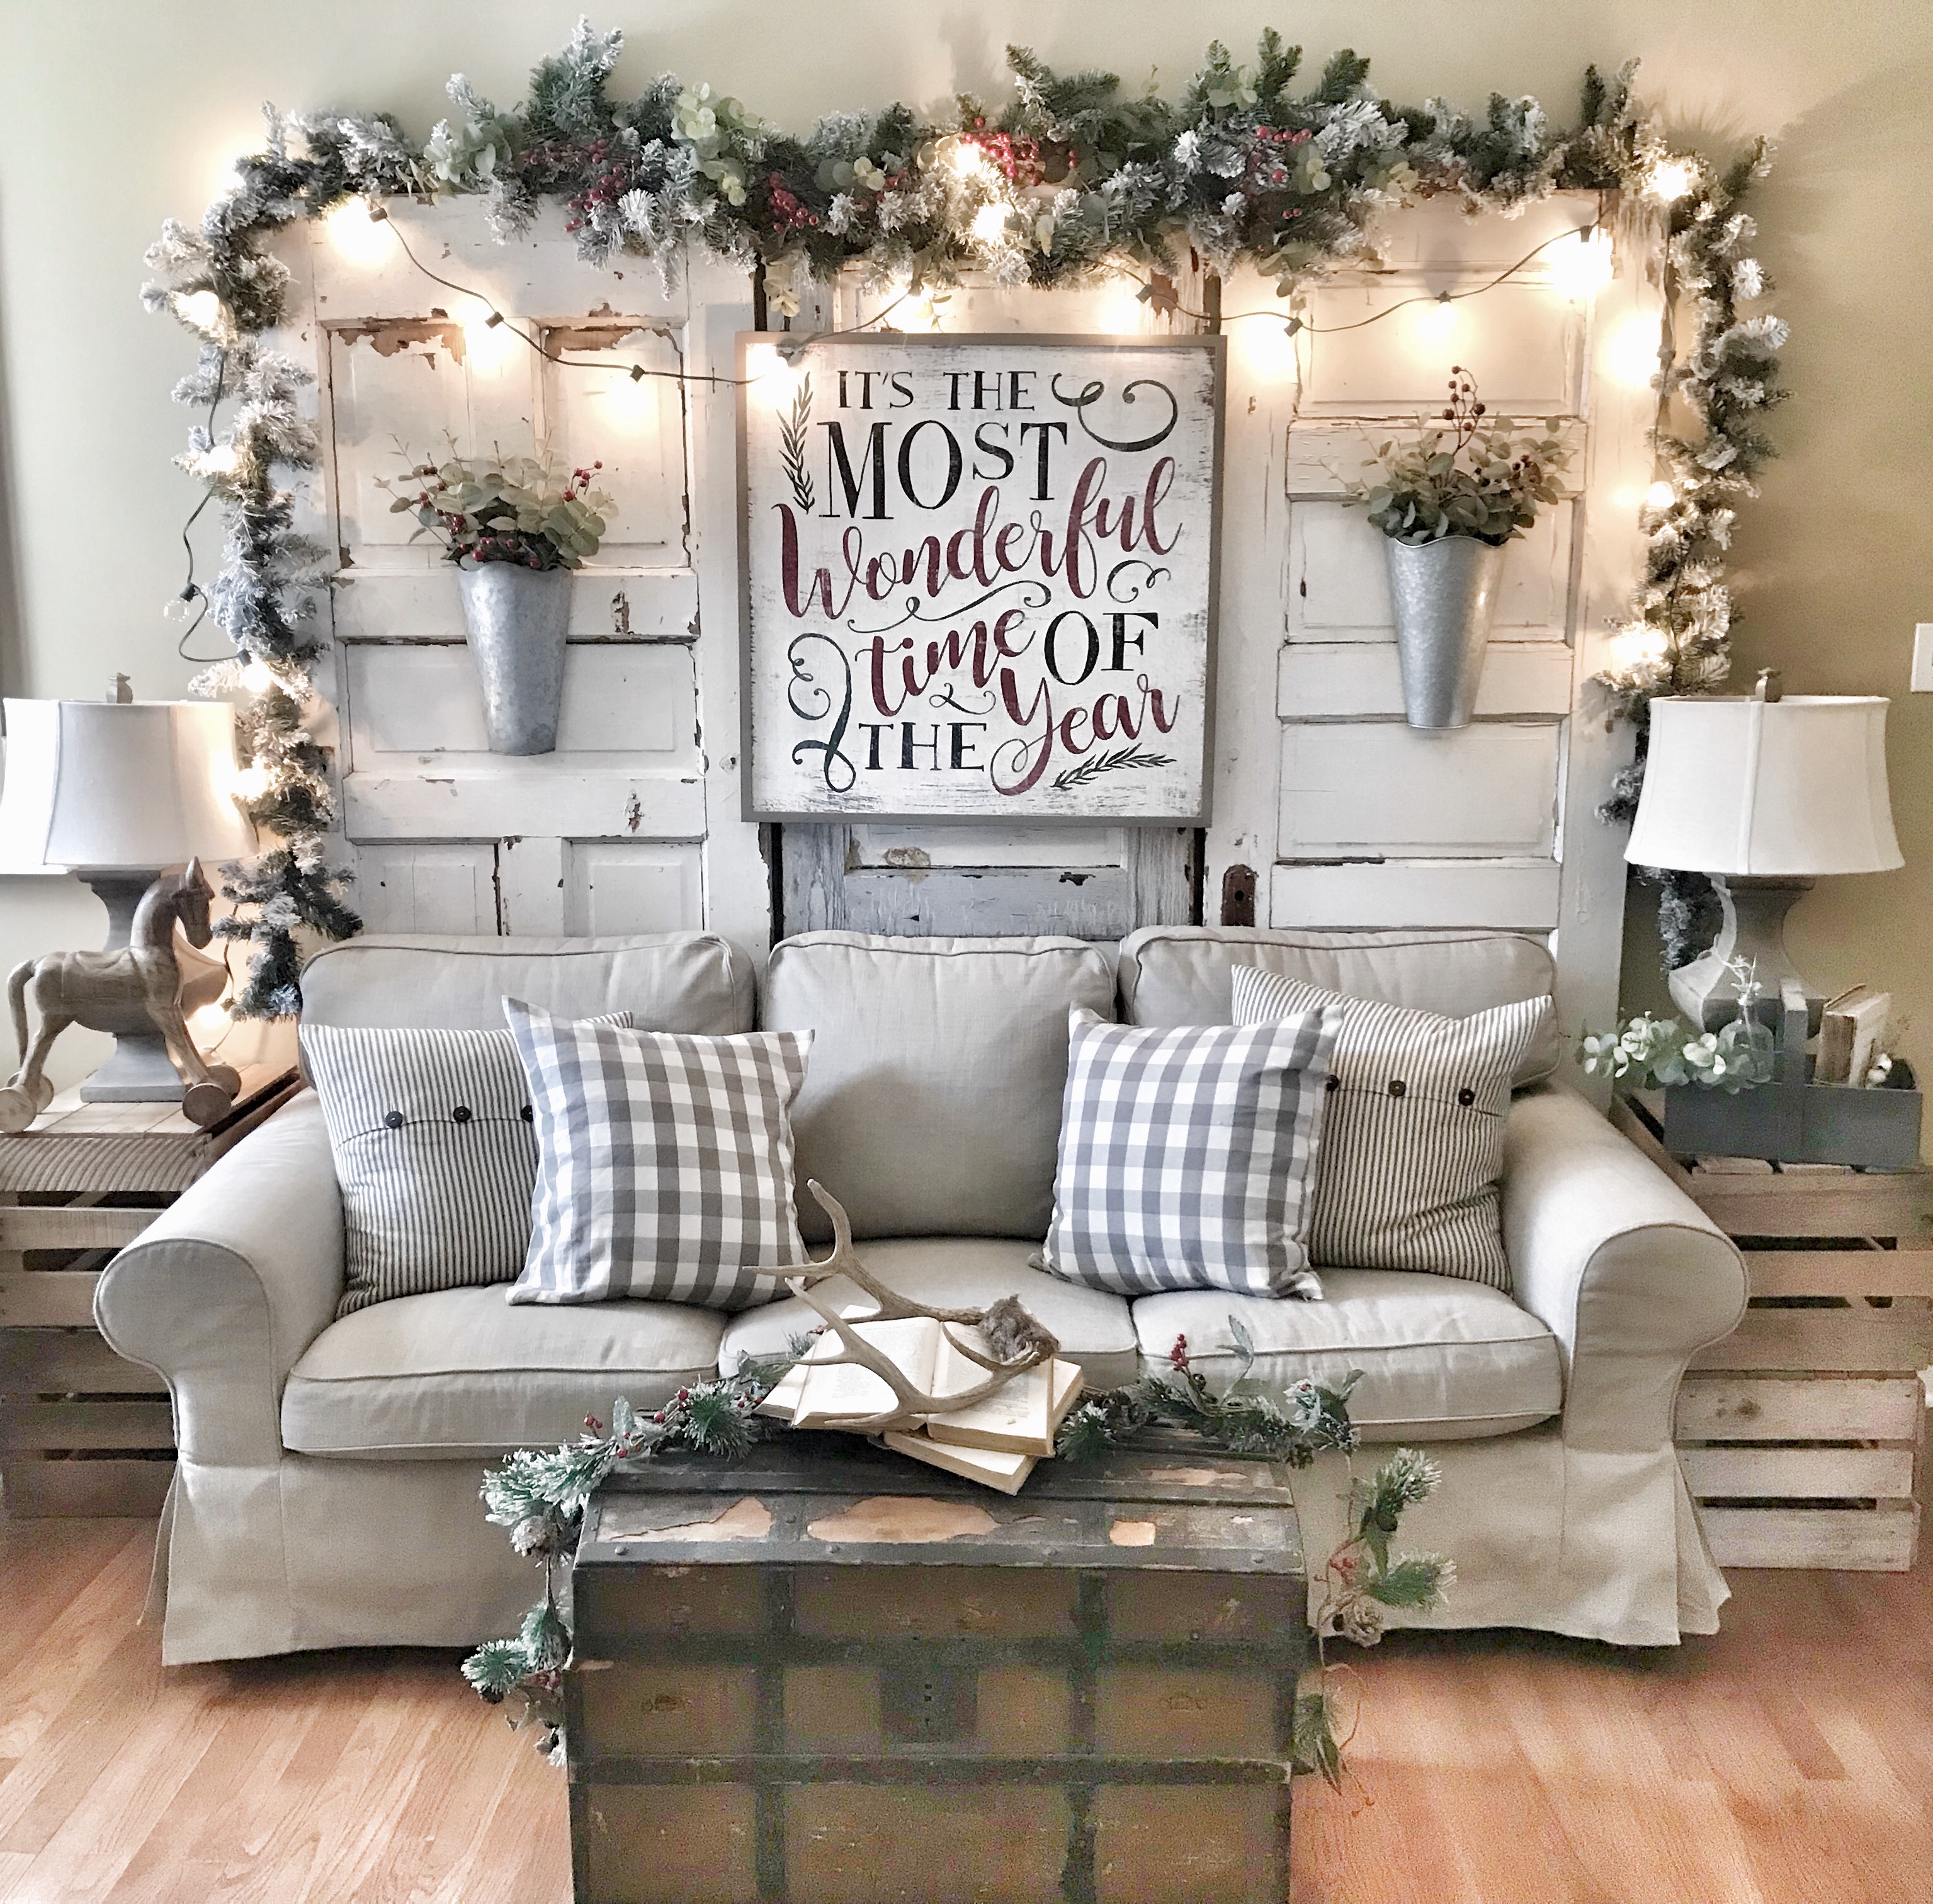 Christmas living room with garland, Christmas lights, and Christmas sign